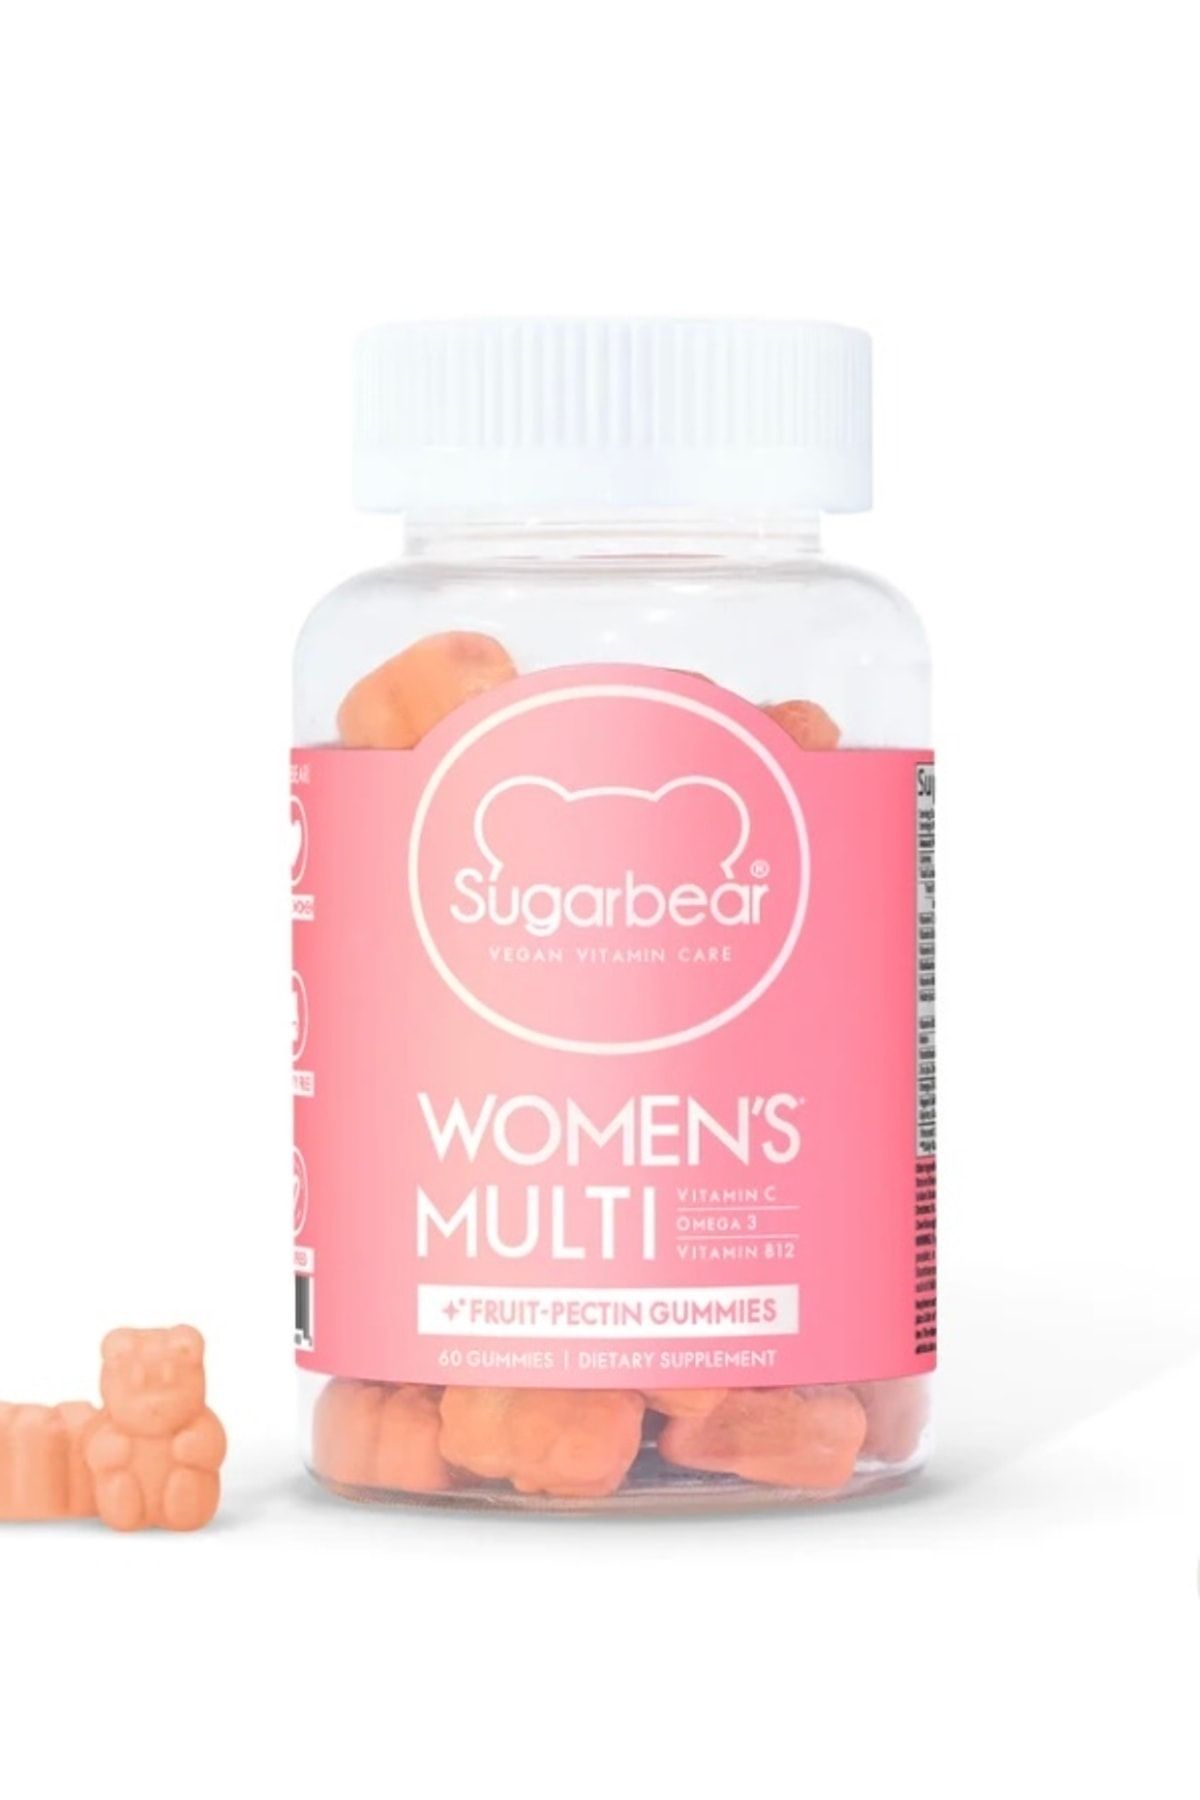 Sugarbear Women's Multi Vitamin Kadınlara Özel 60 Kapsül